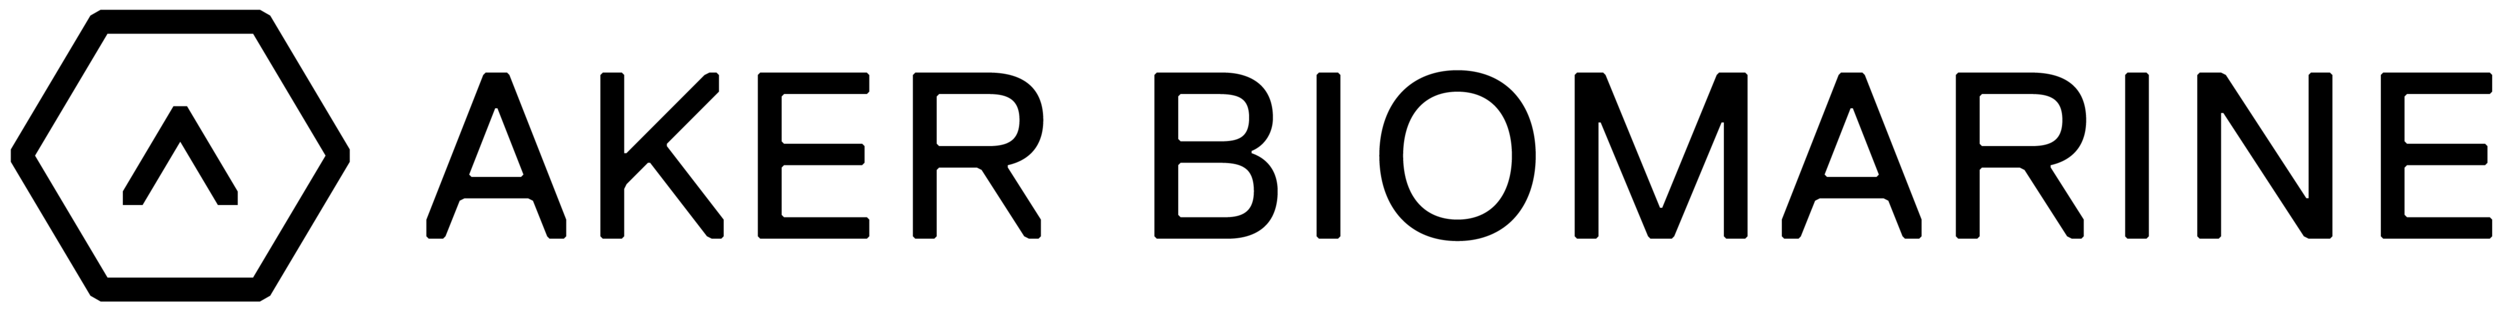 1_AkerBioMarine_Main_Logo_Horizontal_Black.png